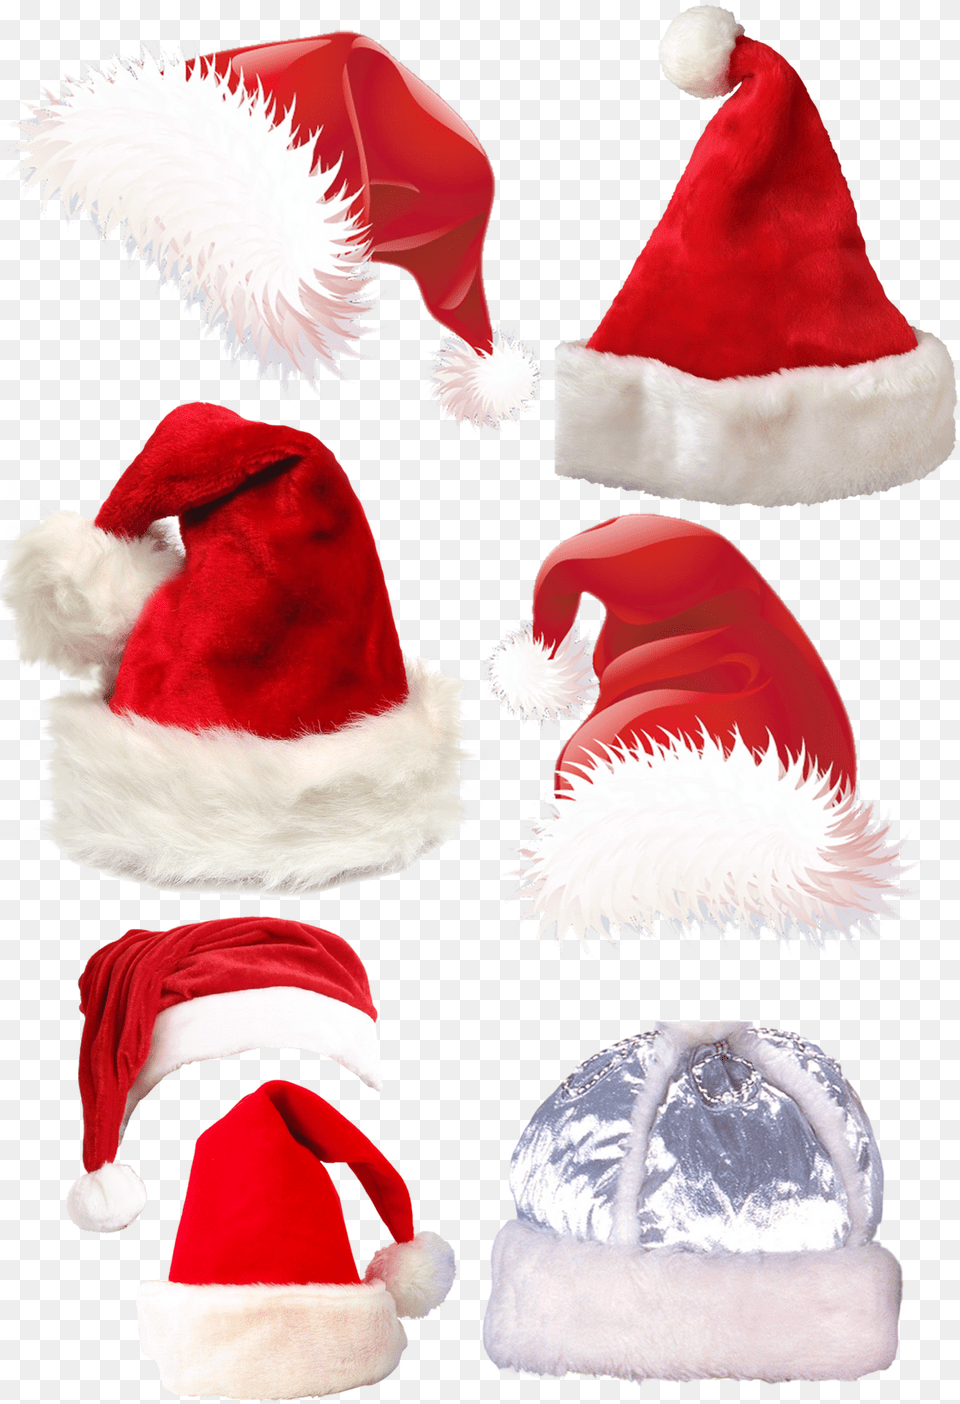 Santa Claus Hat, Clothing, Toy, Plush, Cap Free Png Download